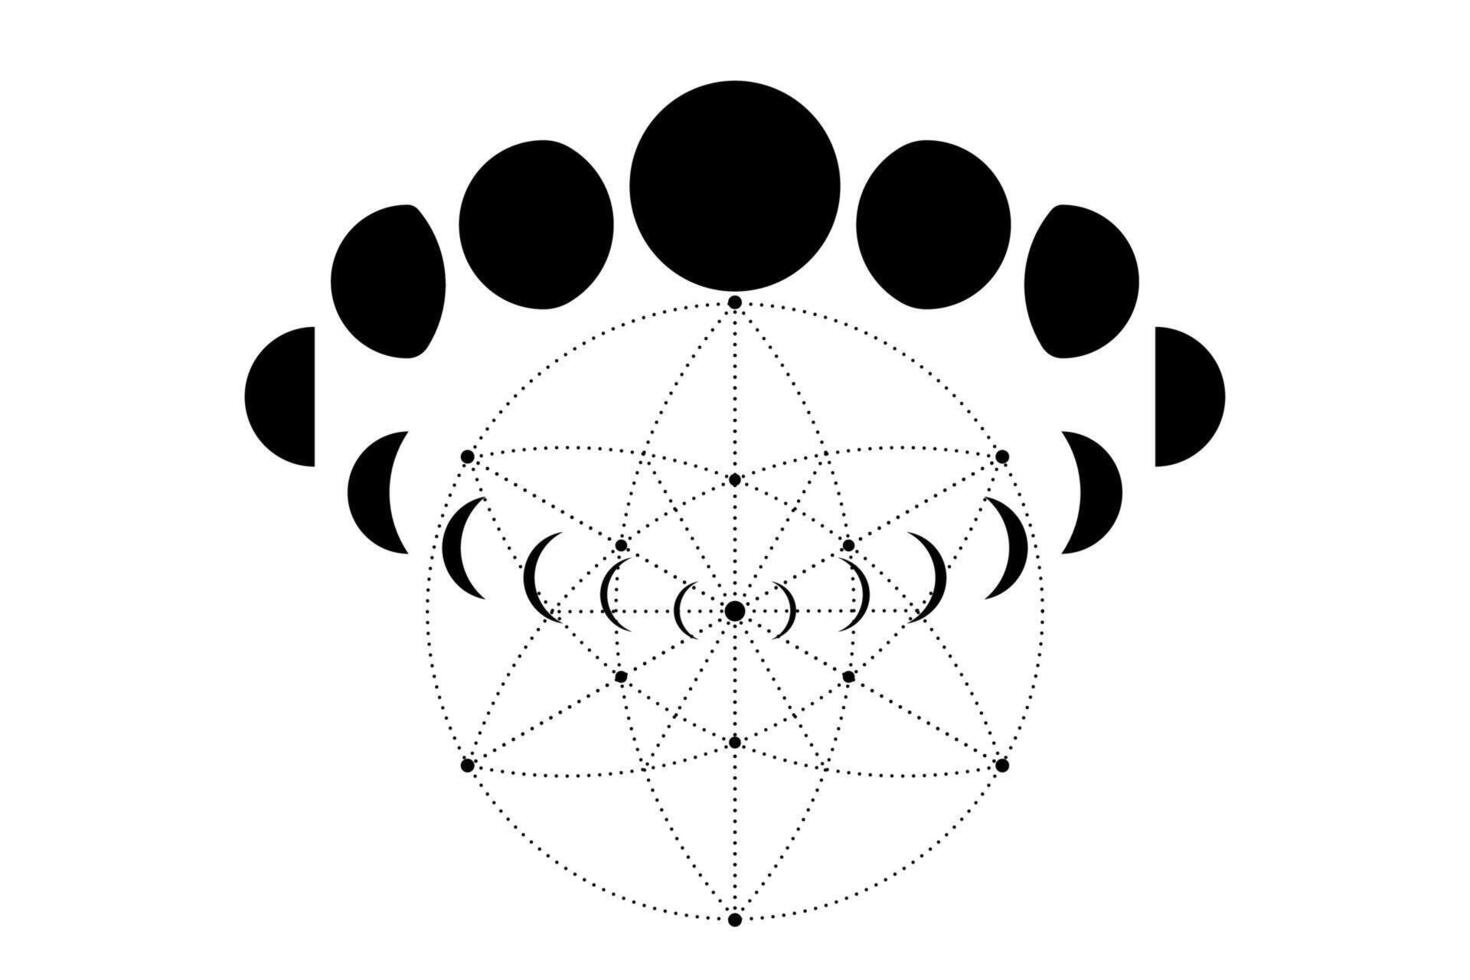 måne faser på helig geometri. mystisk teckning geometrisk energi cirklar, magi astrologi symboler, alkemi, esoterism, ockultism tecken, svart vektor isolerat på en vit bakgrund